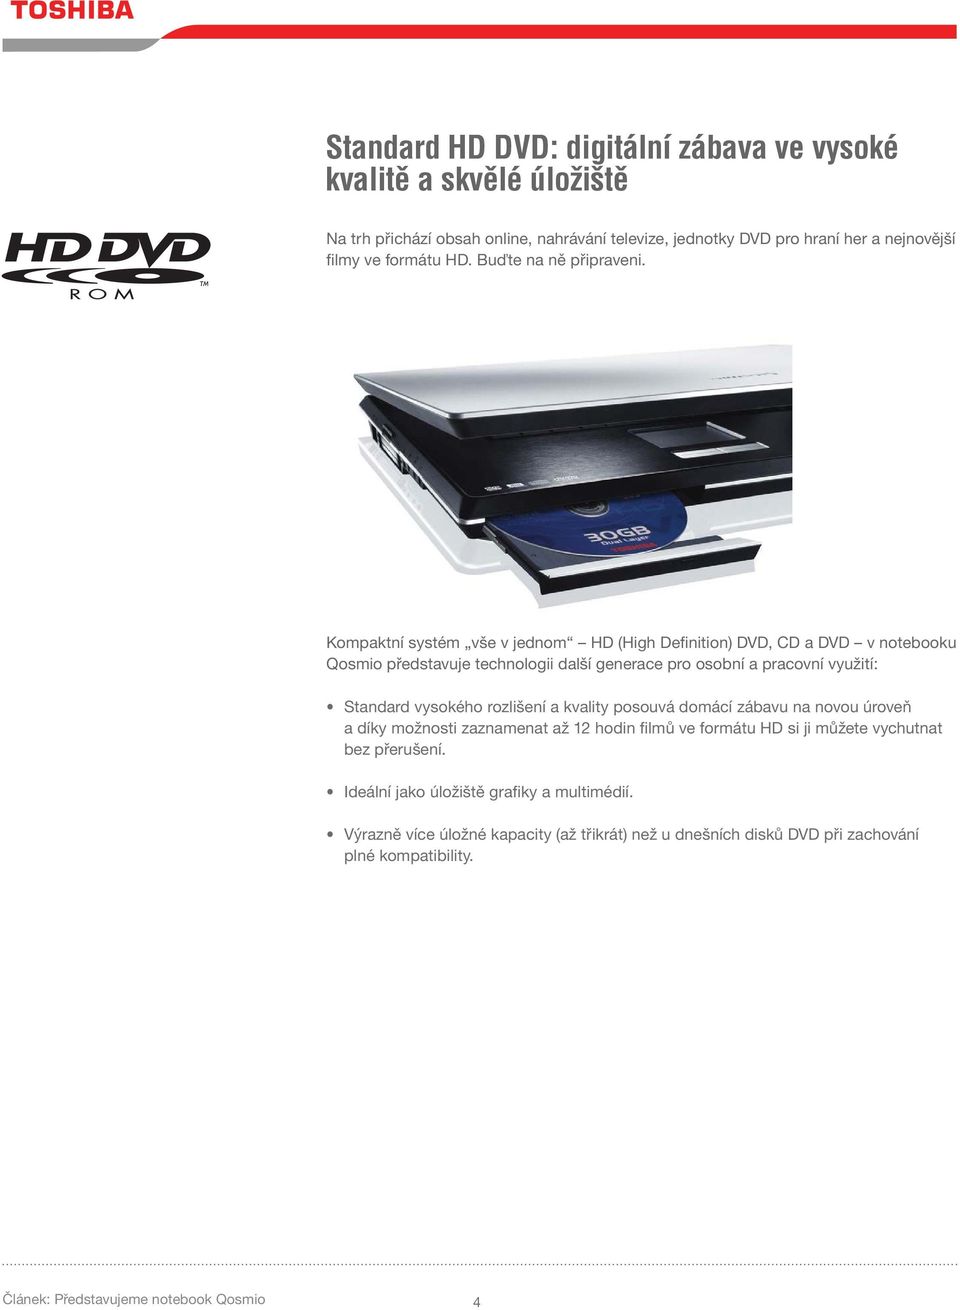 Kompaktní systém vše v jednom HD (High Definition) DVD, CD a DVD v notebooku Qosmio představuje technologii další generace pro osobní a pracovní využití: Standard vysokého